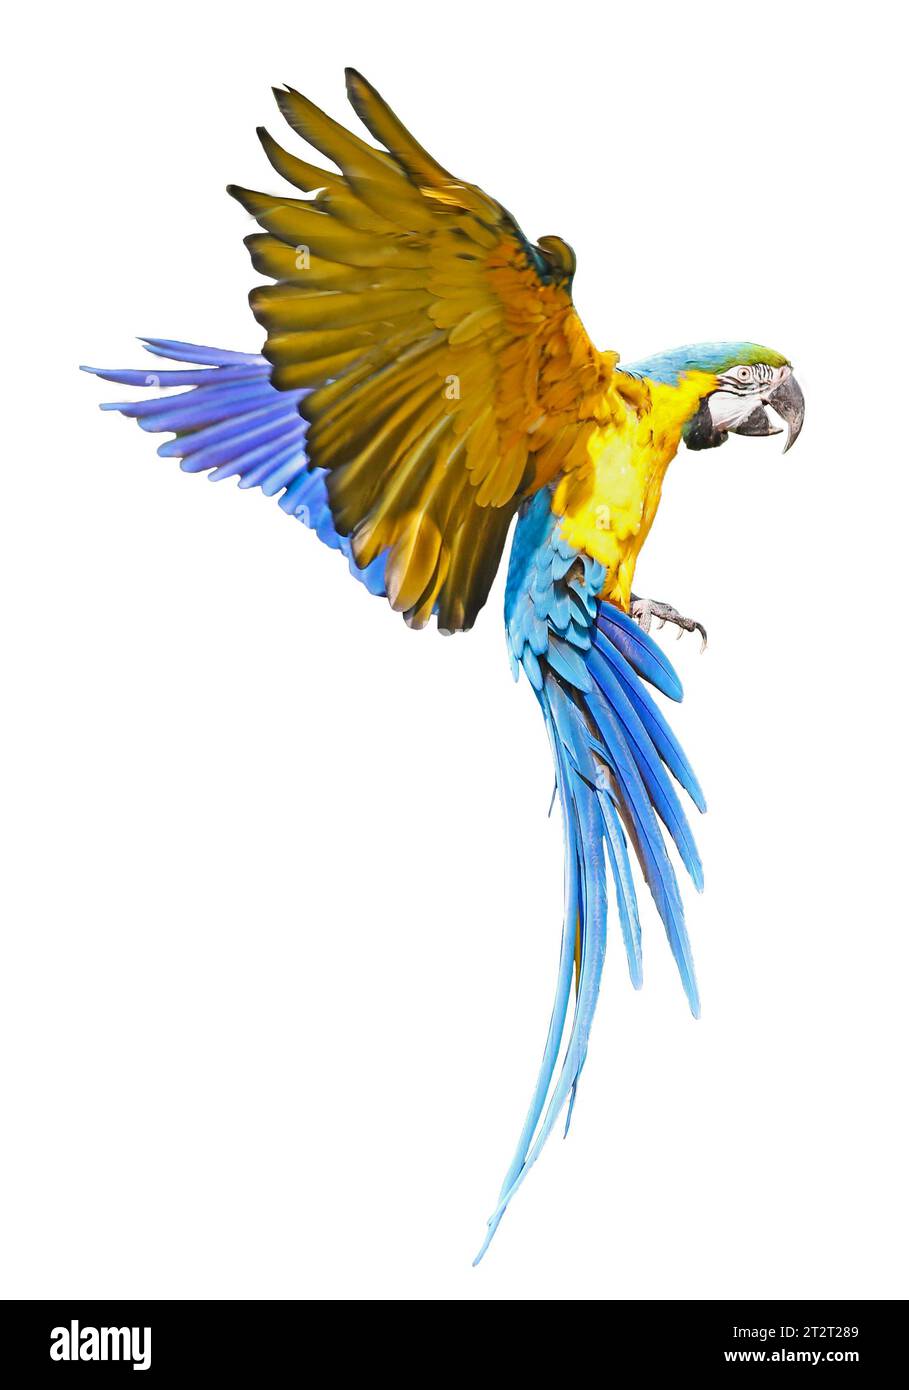 Vue rapprochée d'un maca bleu et jaune volant (Ara ararauna), isolé sur fond blanc Banque D'Images